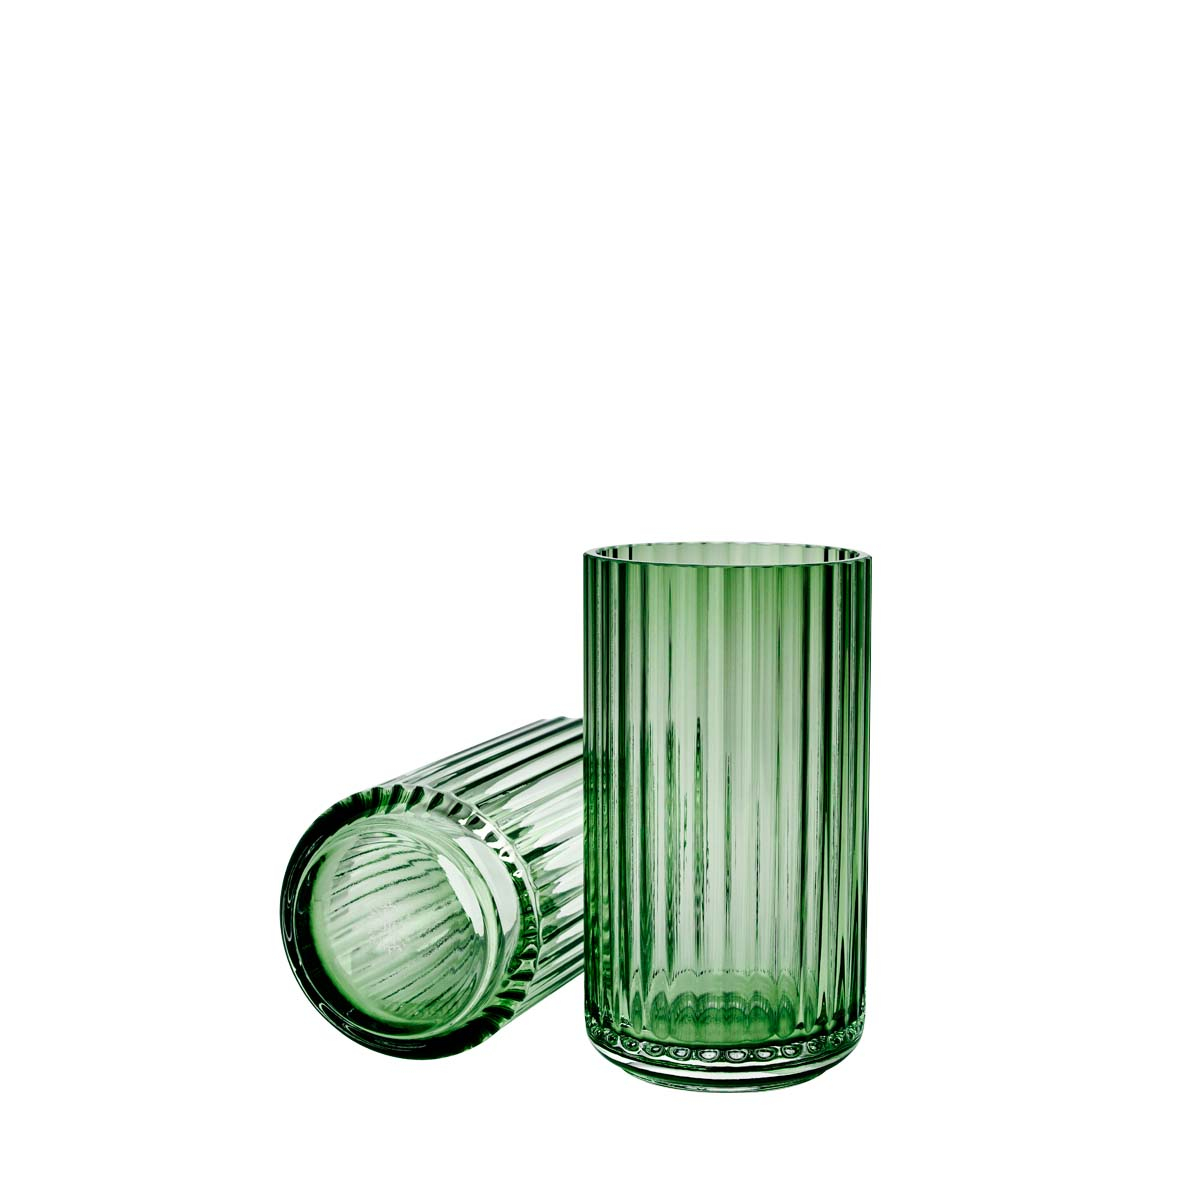 Billede af Lyngby Porcelæn - Lyngbyvase H20 copenhagen green mundblæst glas